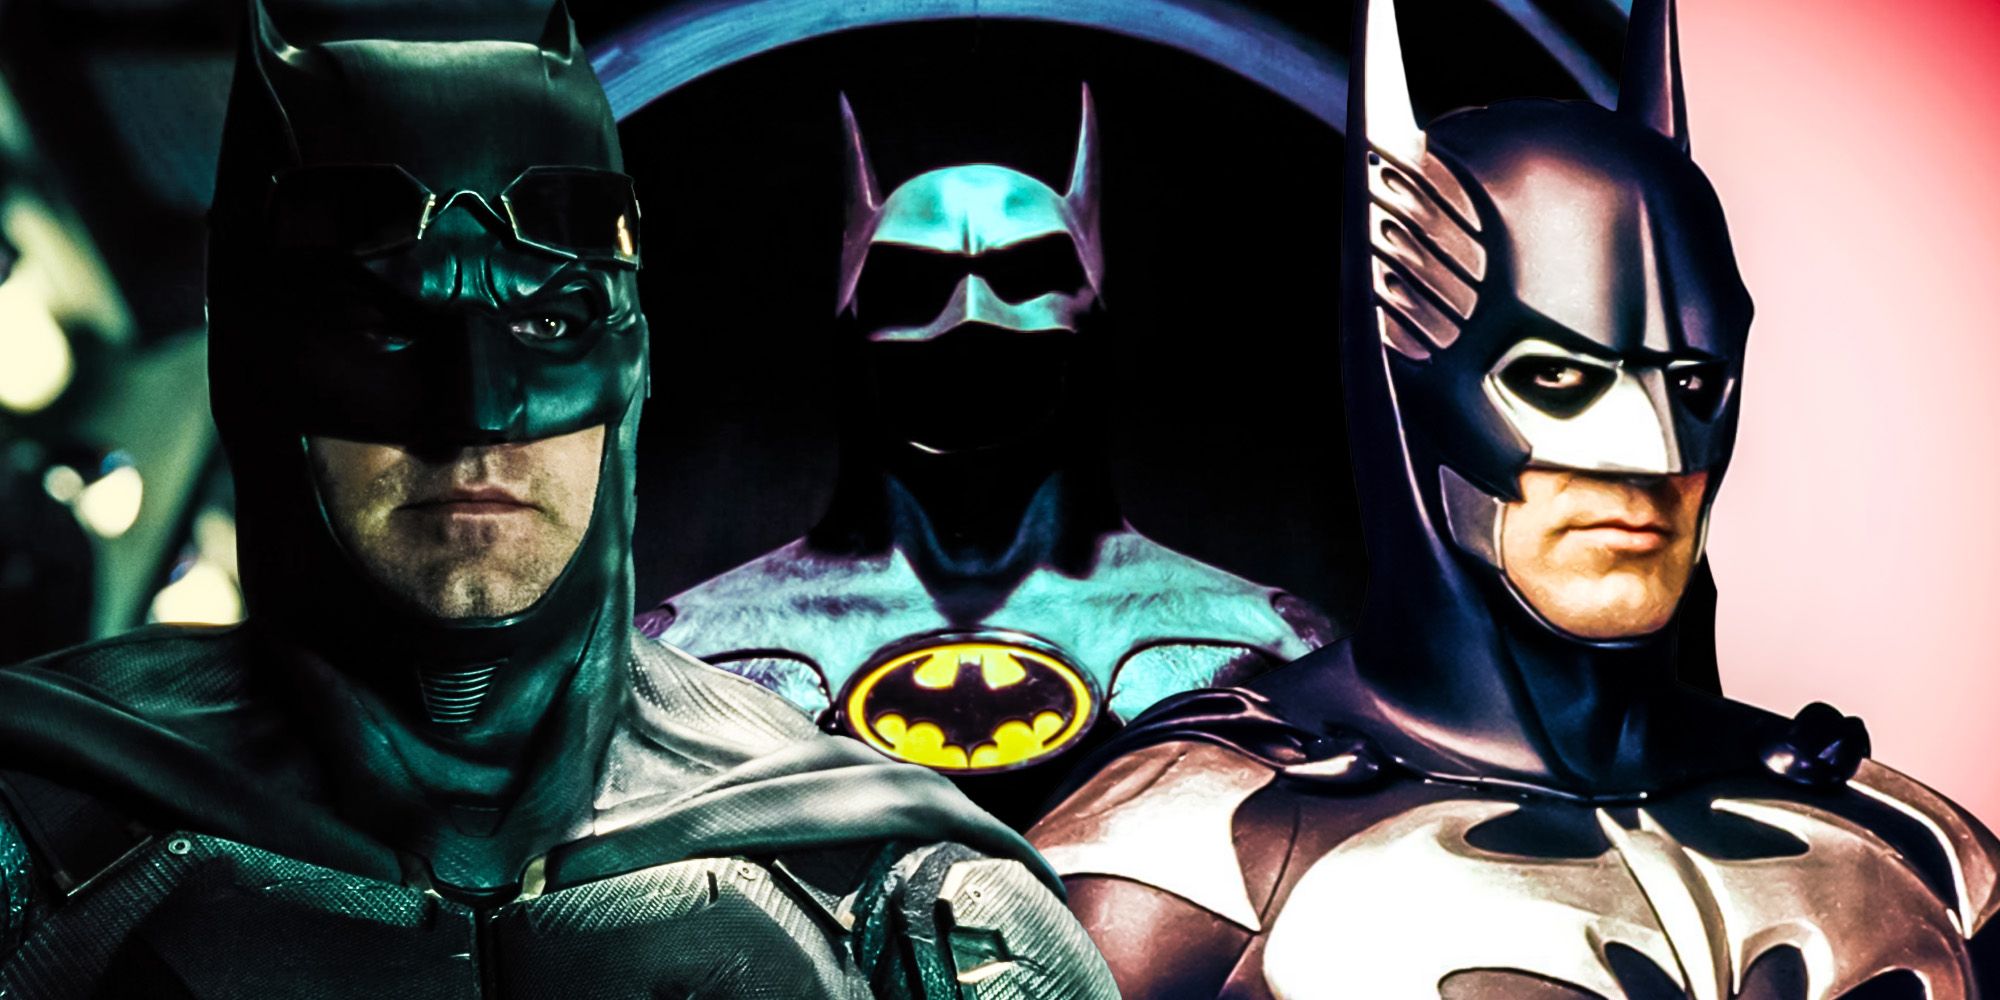 Michael Keatons Batman suits breaks a live action batman trend